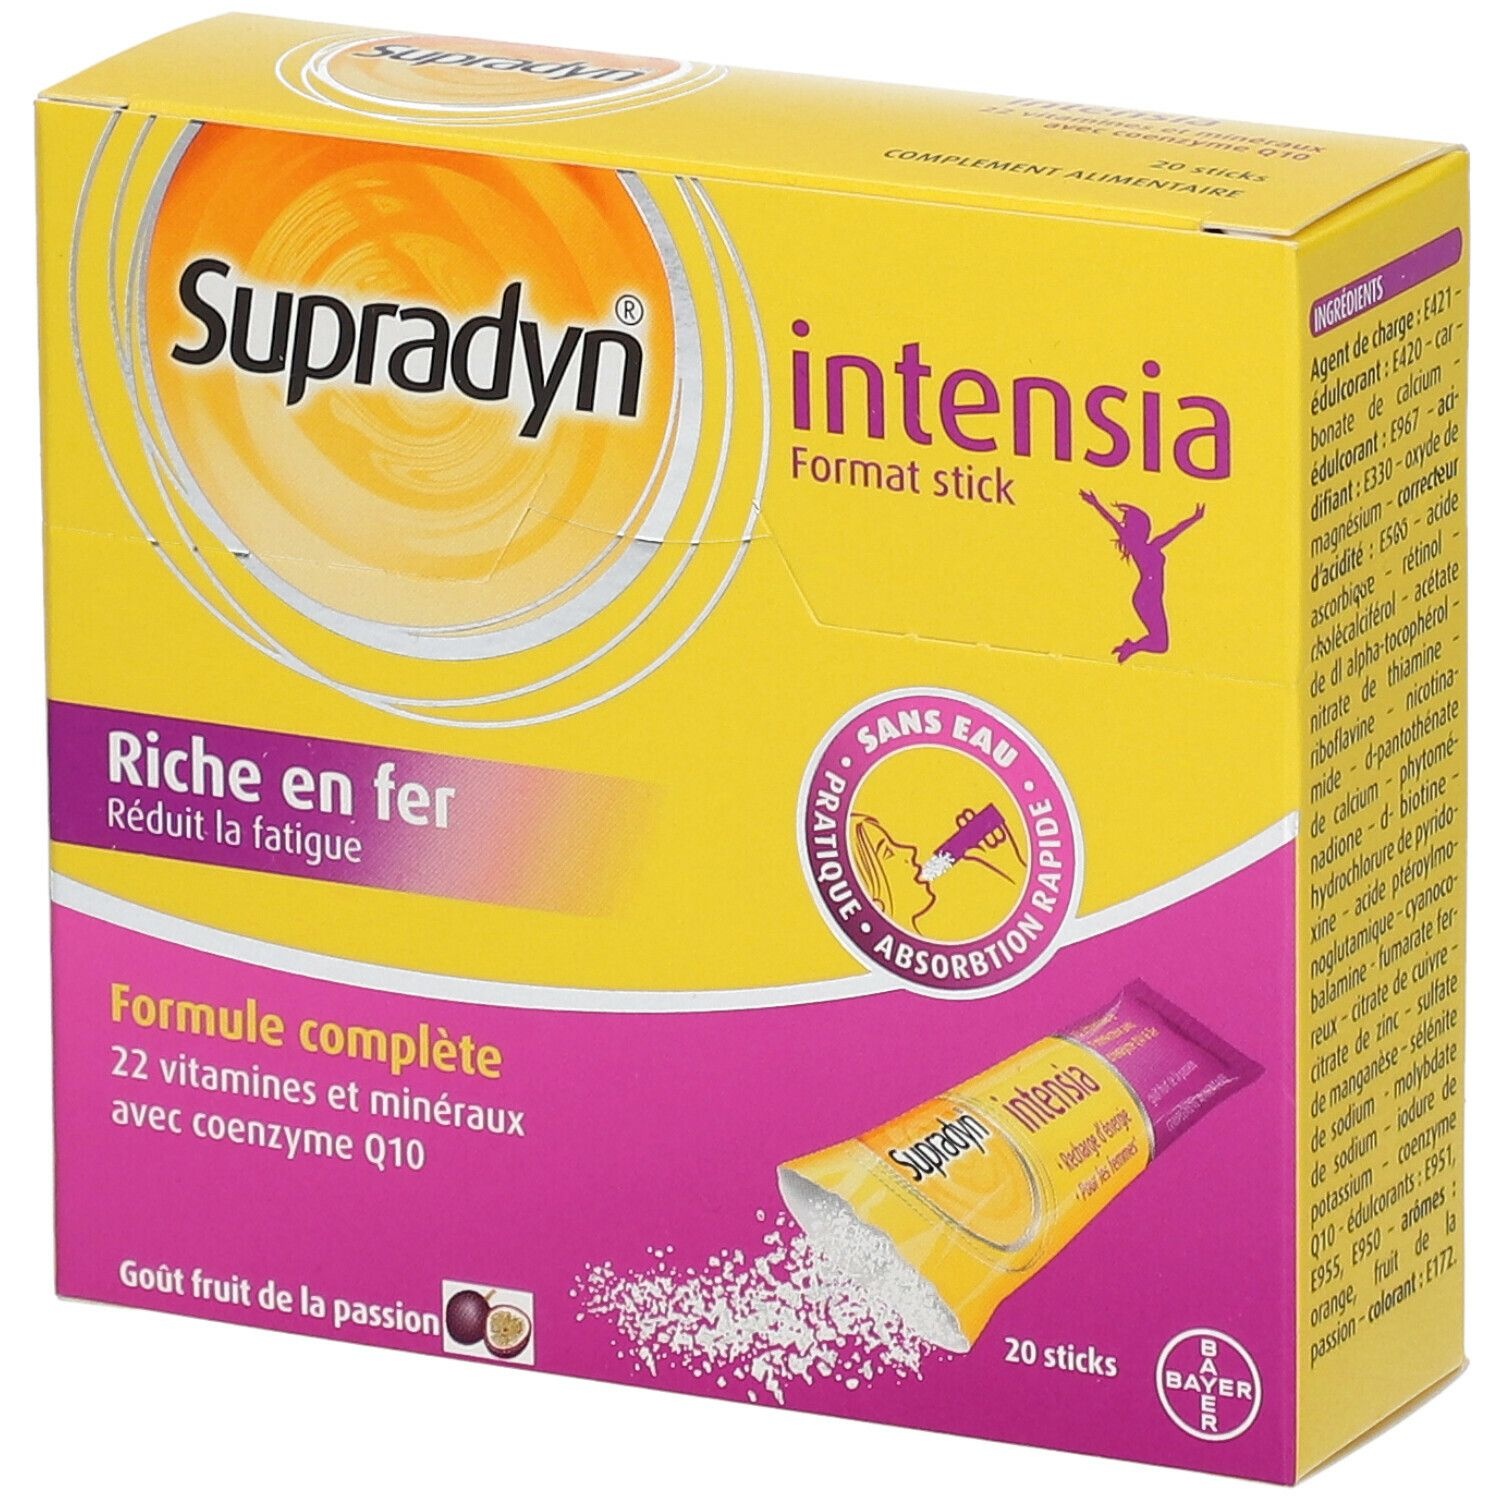 Supradyn Intensia Vitamines, Minéraux et Fer 20 sticks Réduit la Fatigue 20 pc(s) sachet(s)